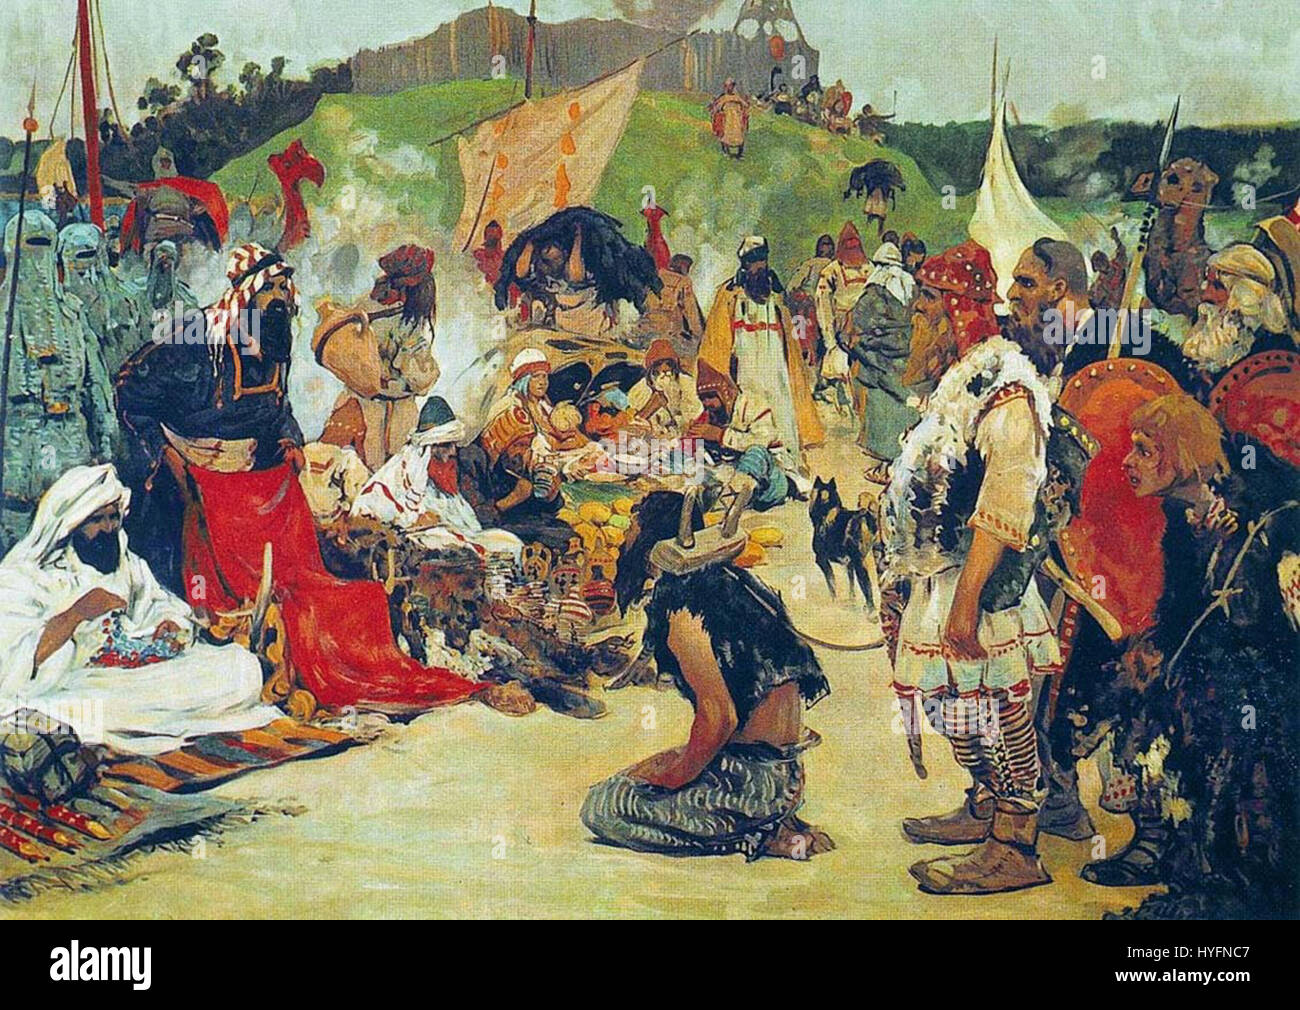 S. V. Ivanov. Negoziati commerciali nel paese di slavi orientali. Immagini della storia russa. (1909) Foto Stock